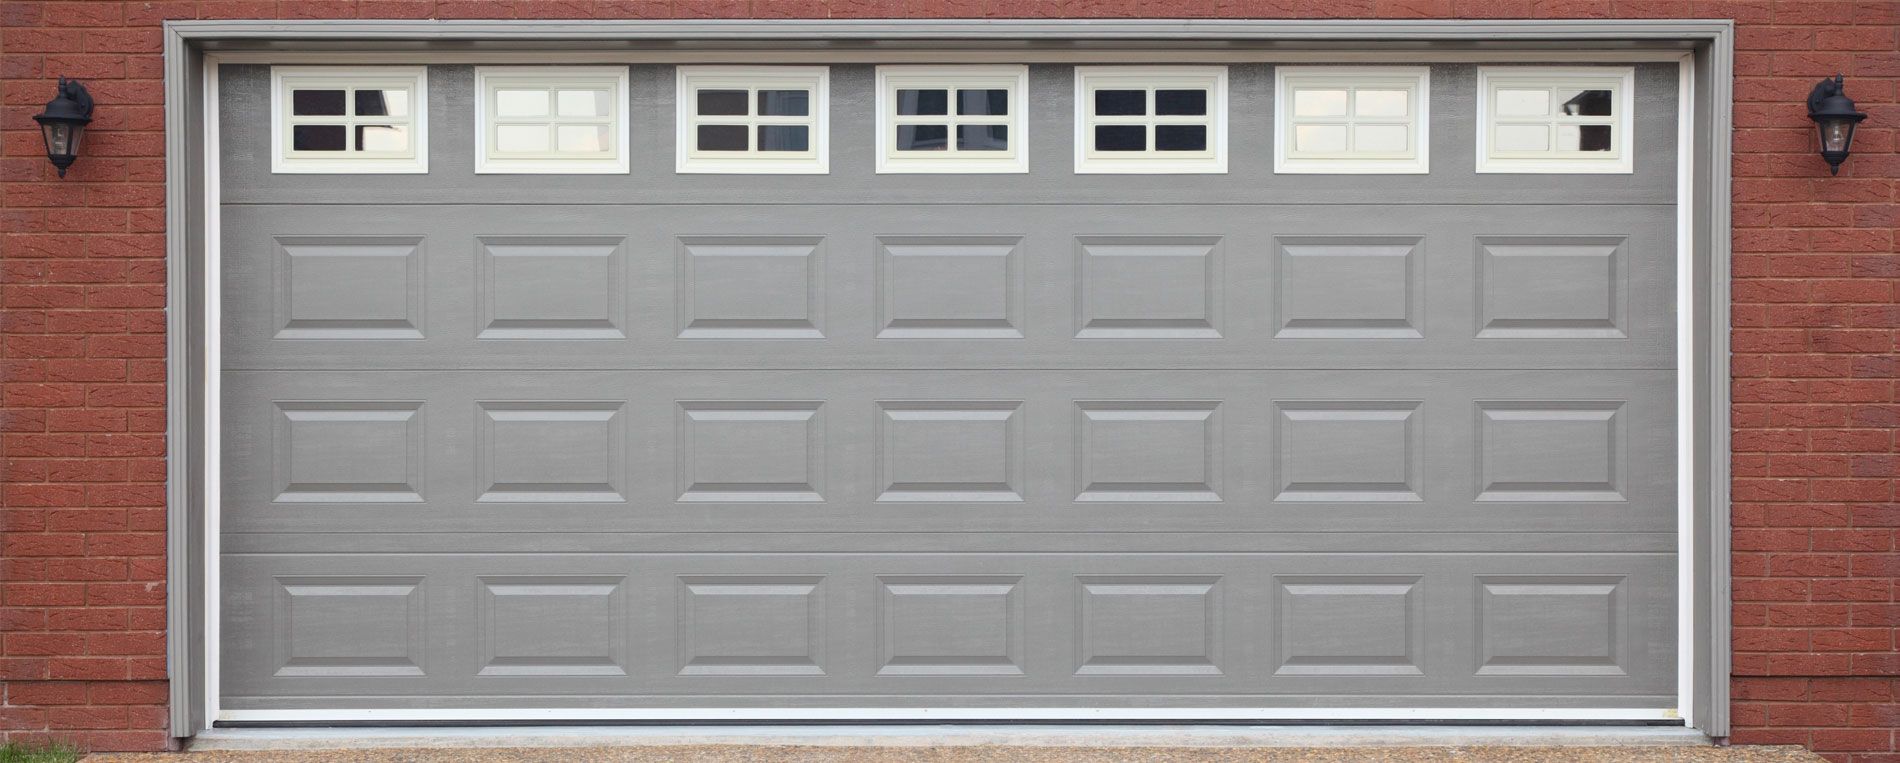 Proactive Garage Door Pointers